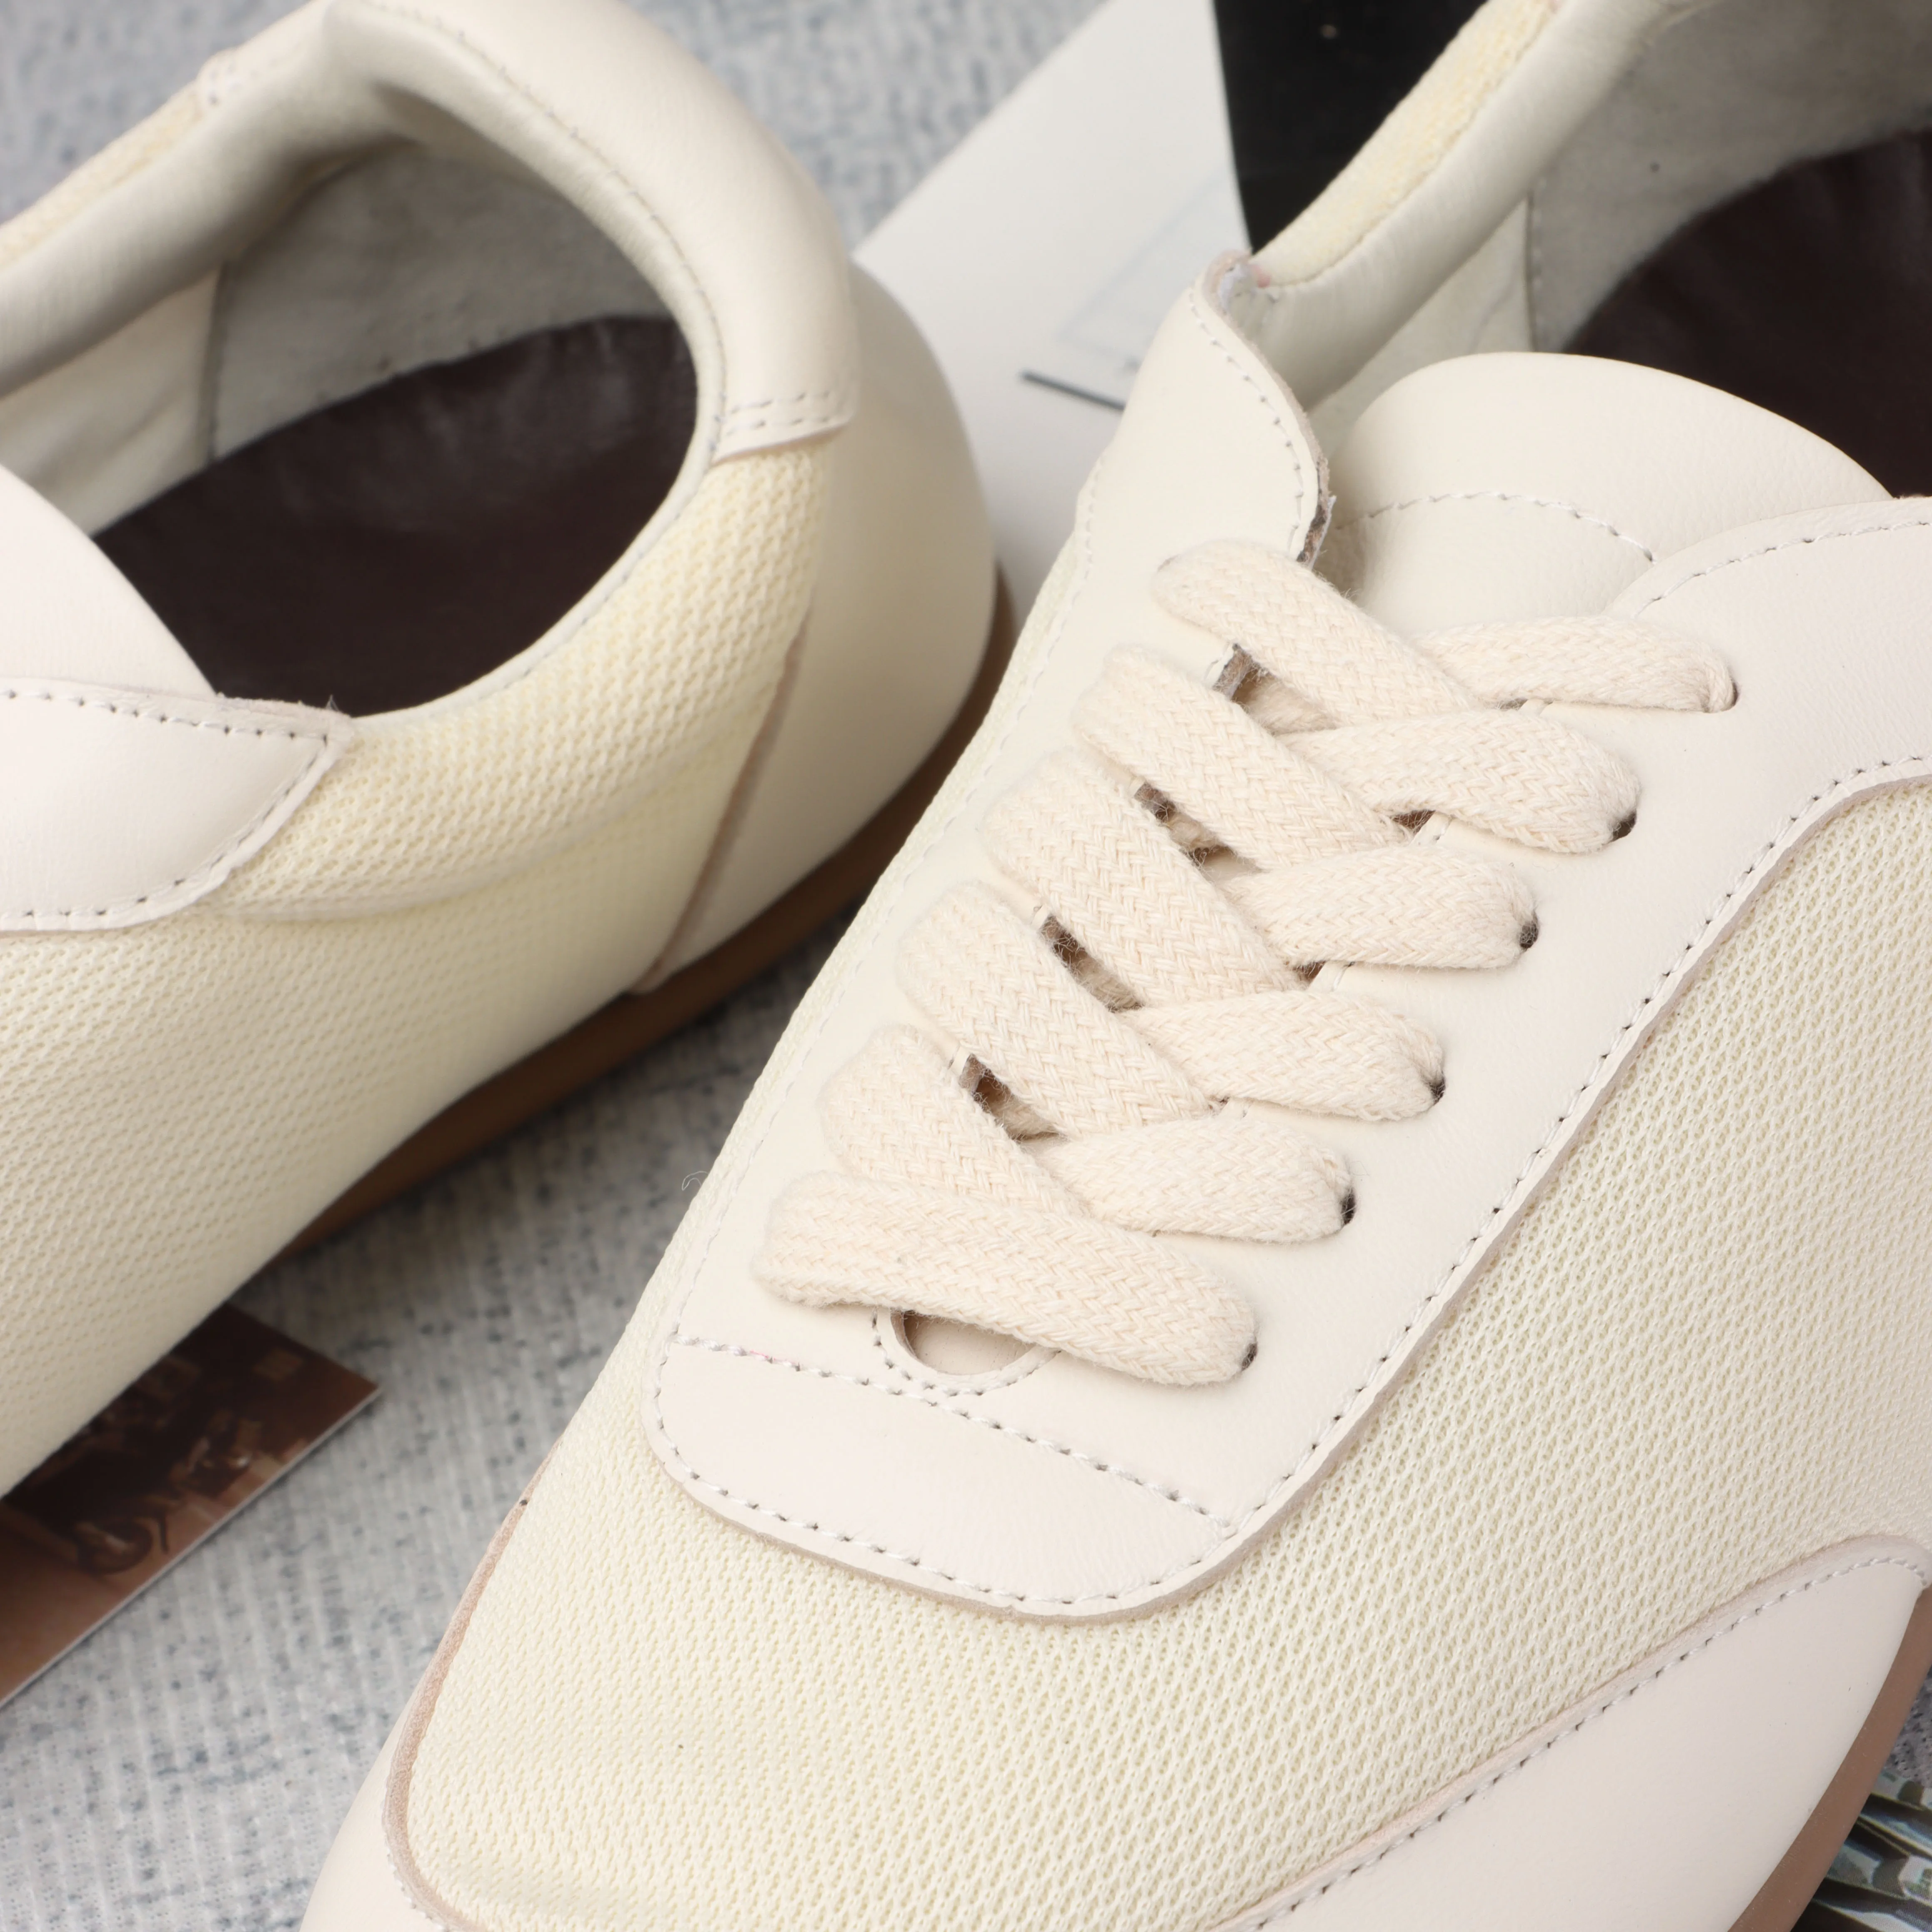 2023 Taliansko Desinger Topánky Pre Ženy R0* Gat Luxusná Obuv Z Kože A Oka Značka Vysokej Kvality Biele Topánky